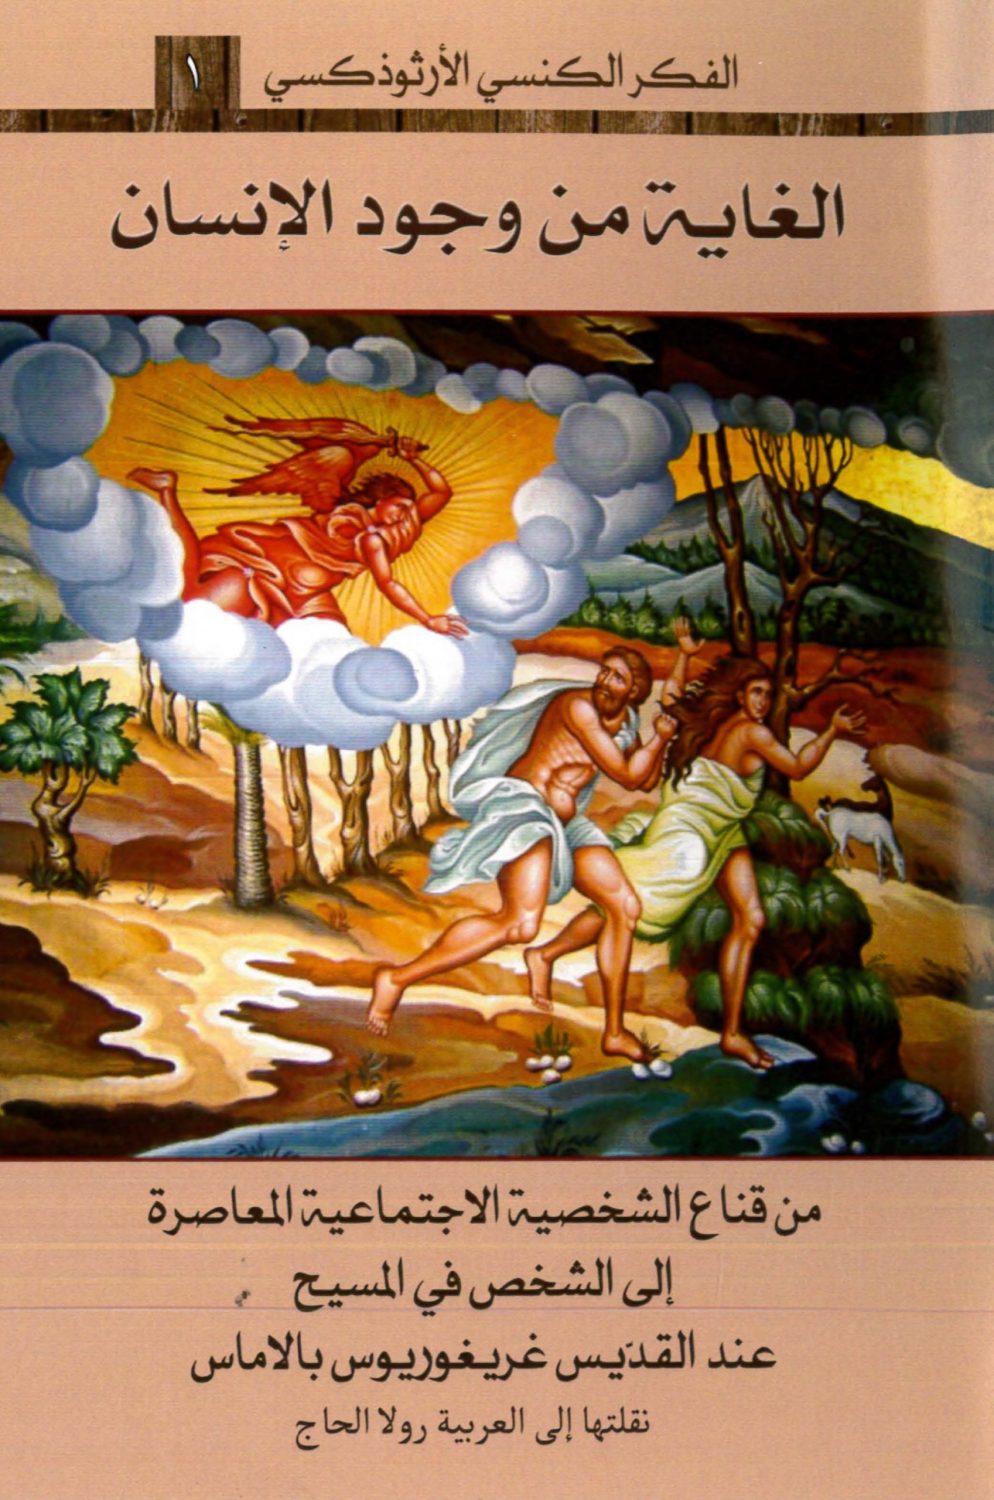 كتاب الغاية من وجود الإنسان عند القديس غريغوريوس بالاماس - رولا الحاج